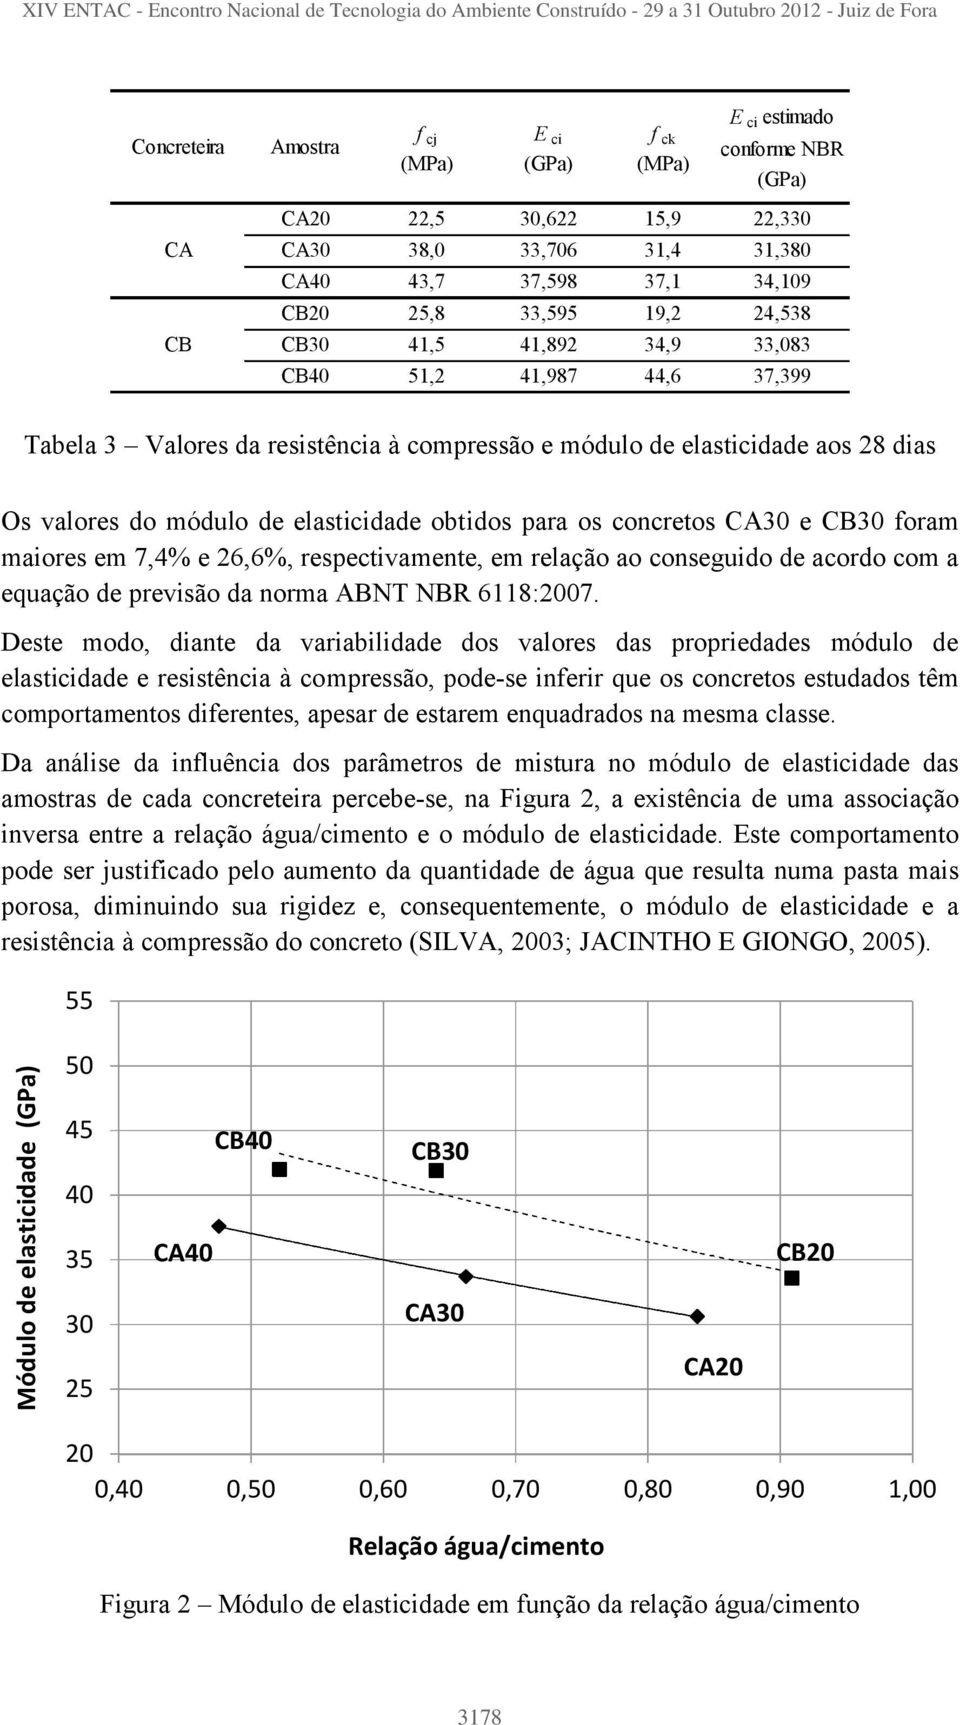 para os concretos CA30 e CB30 foram maiores em 7,4% e 26,6%, respectivamente, em relação ao conseguido de acordo com a equação de previsão da norma ABNT NBR 6118:2007.